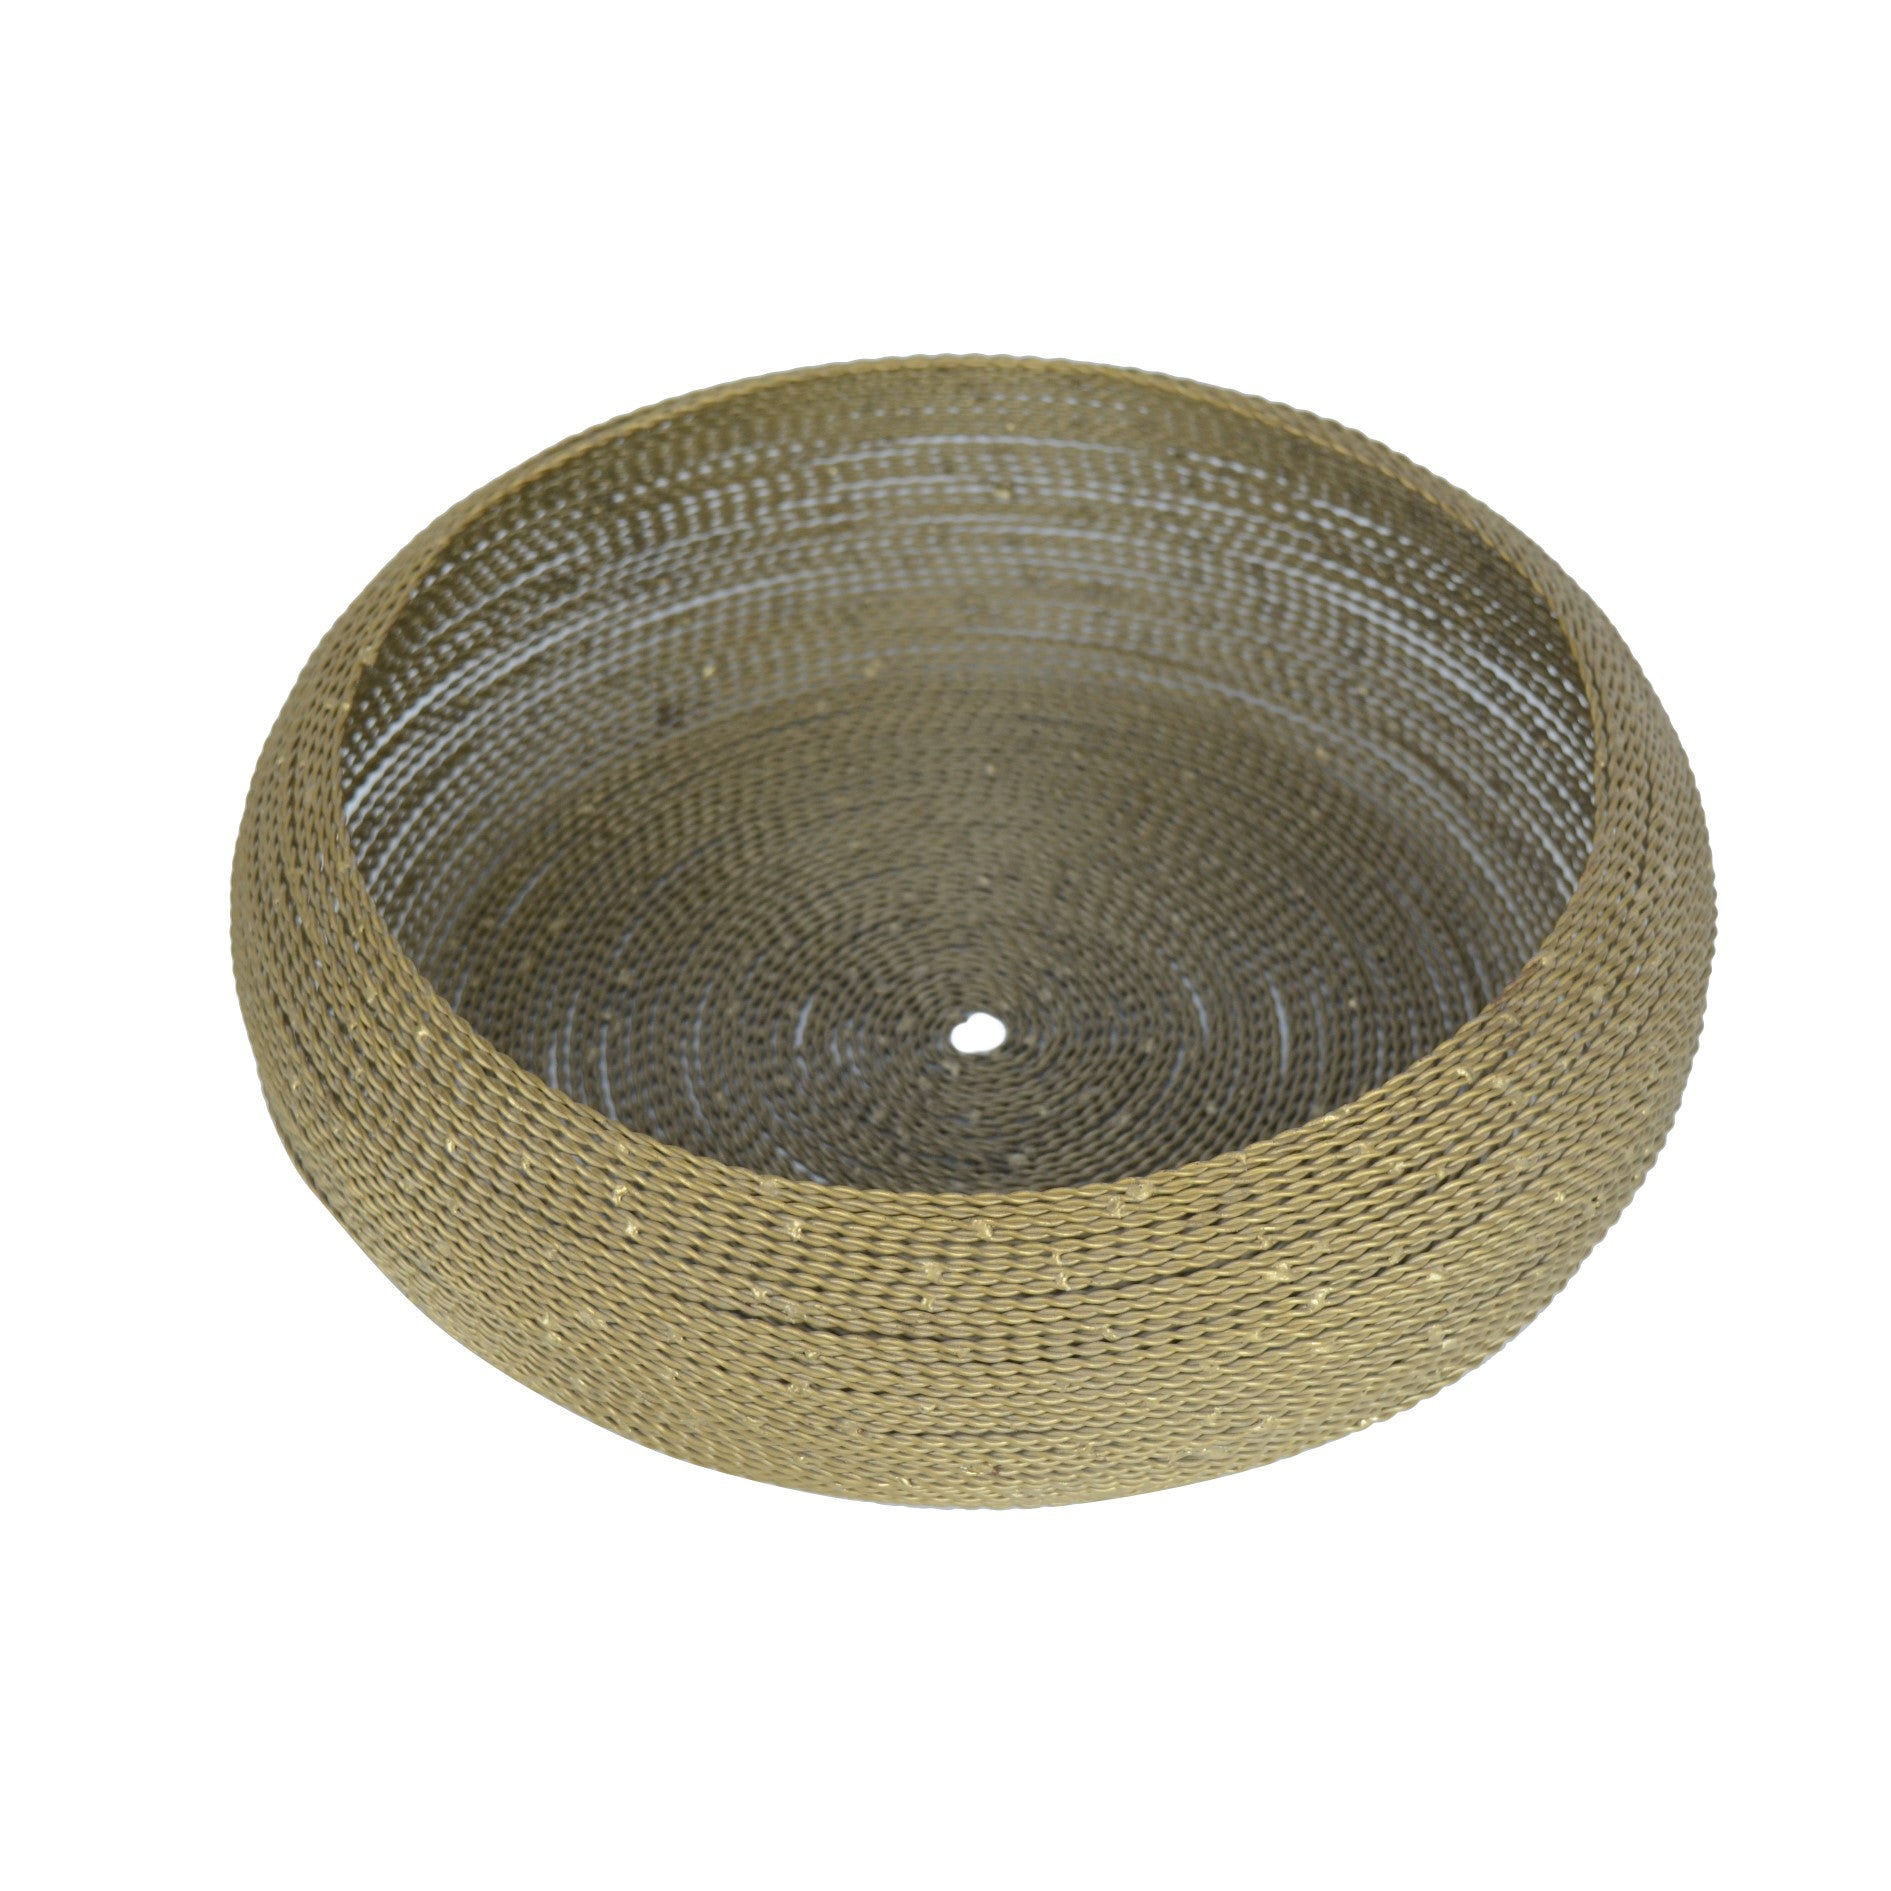 Metallic Round Gold Fruit Basket/Bowl Medium